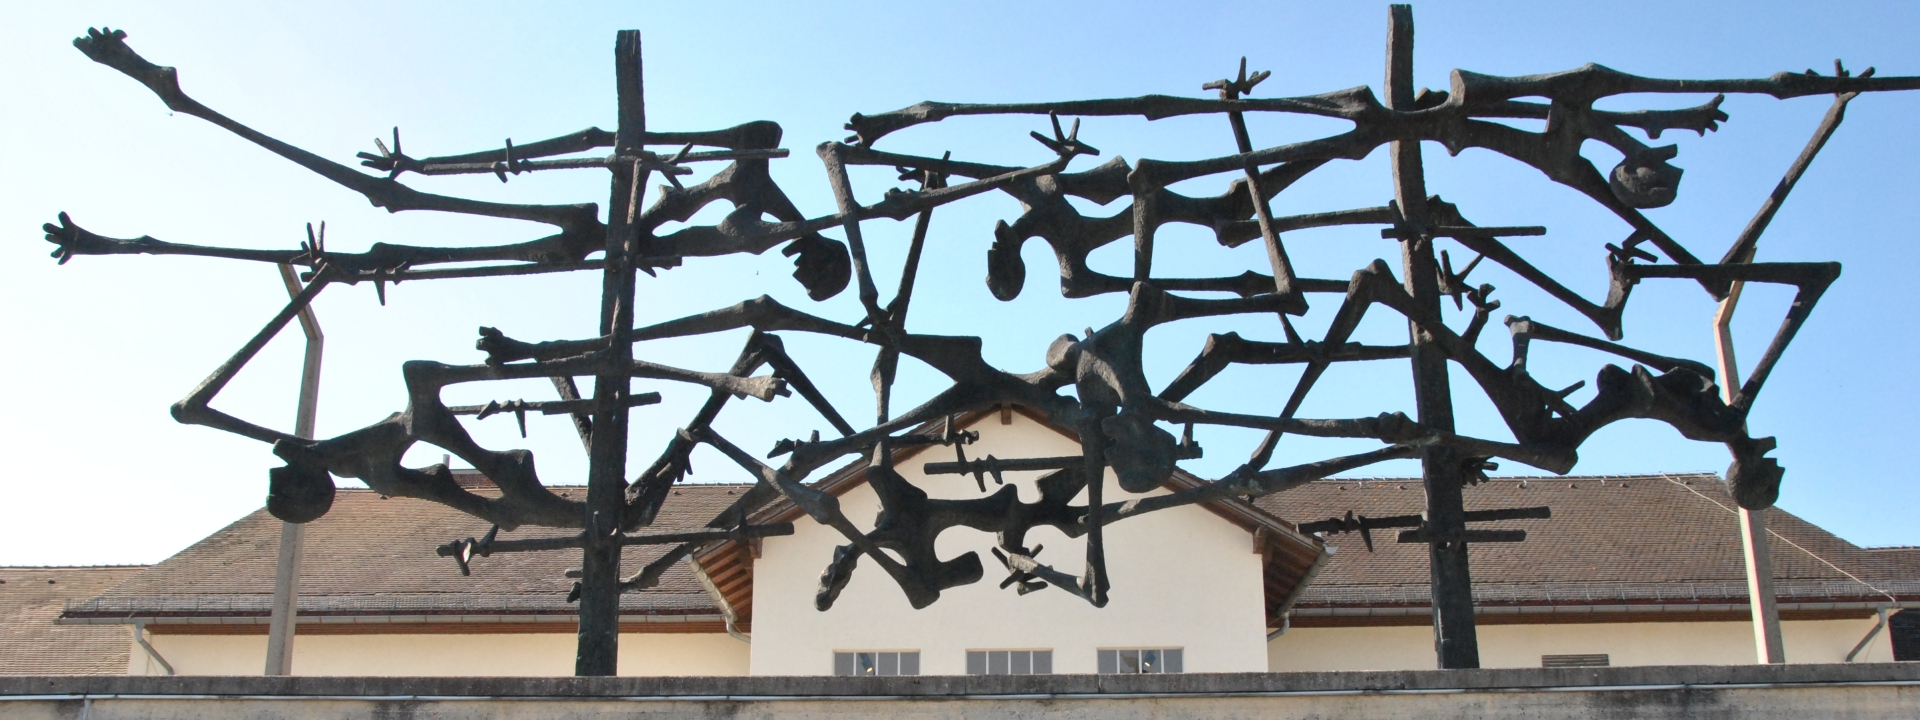 Foto: Ein Kunstwerk aus Eisen über einer Mauer stellt ausgemergelte menschliche Körper dar, die kreuz und quer durcheinander liegen